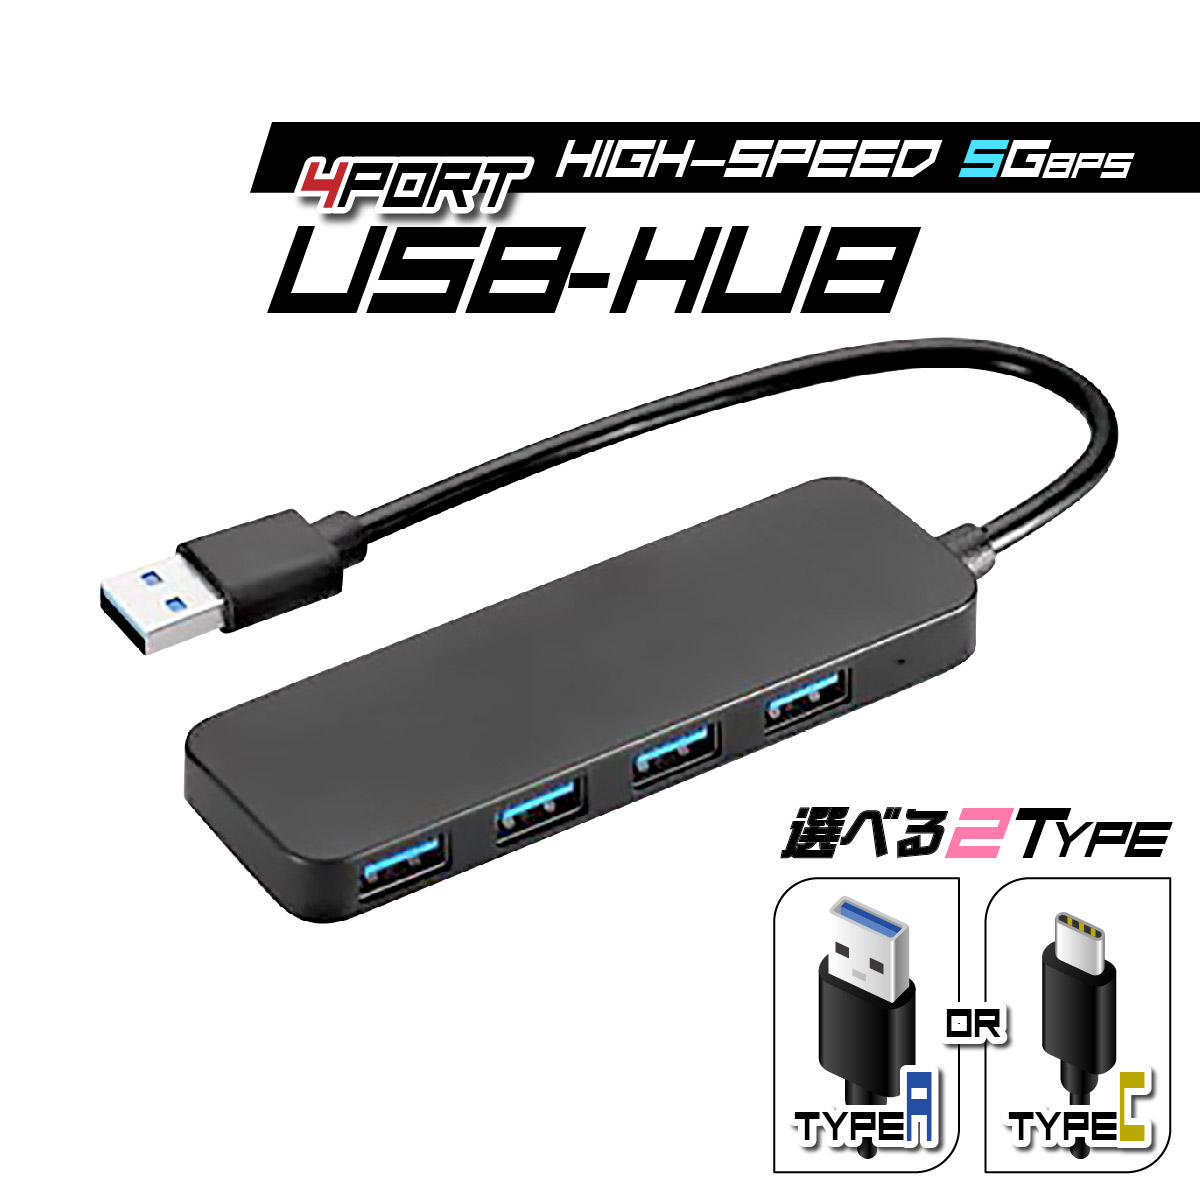 USBハブ 3.0 type-c type-a usb3.0 4ポート タイプC タイプA 薄型 スマホ充電 給電 軽量設計 usbポート USB拡張  接続 コンパクト 4in1 高速 Macbook Windows